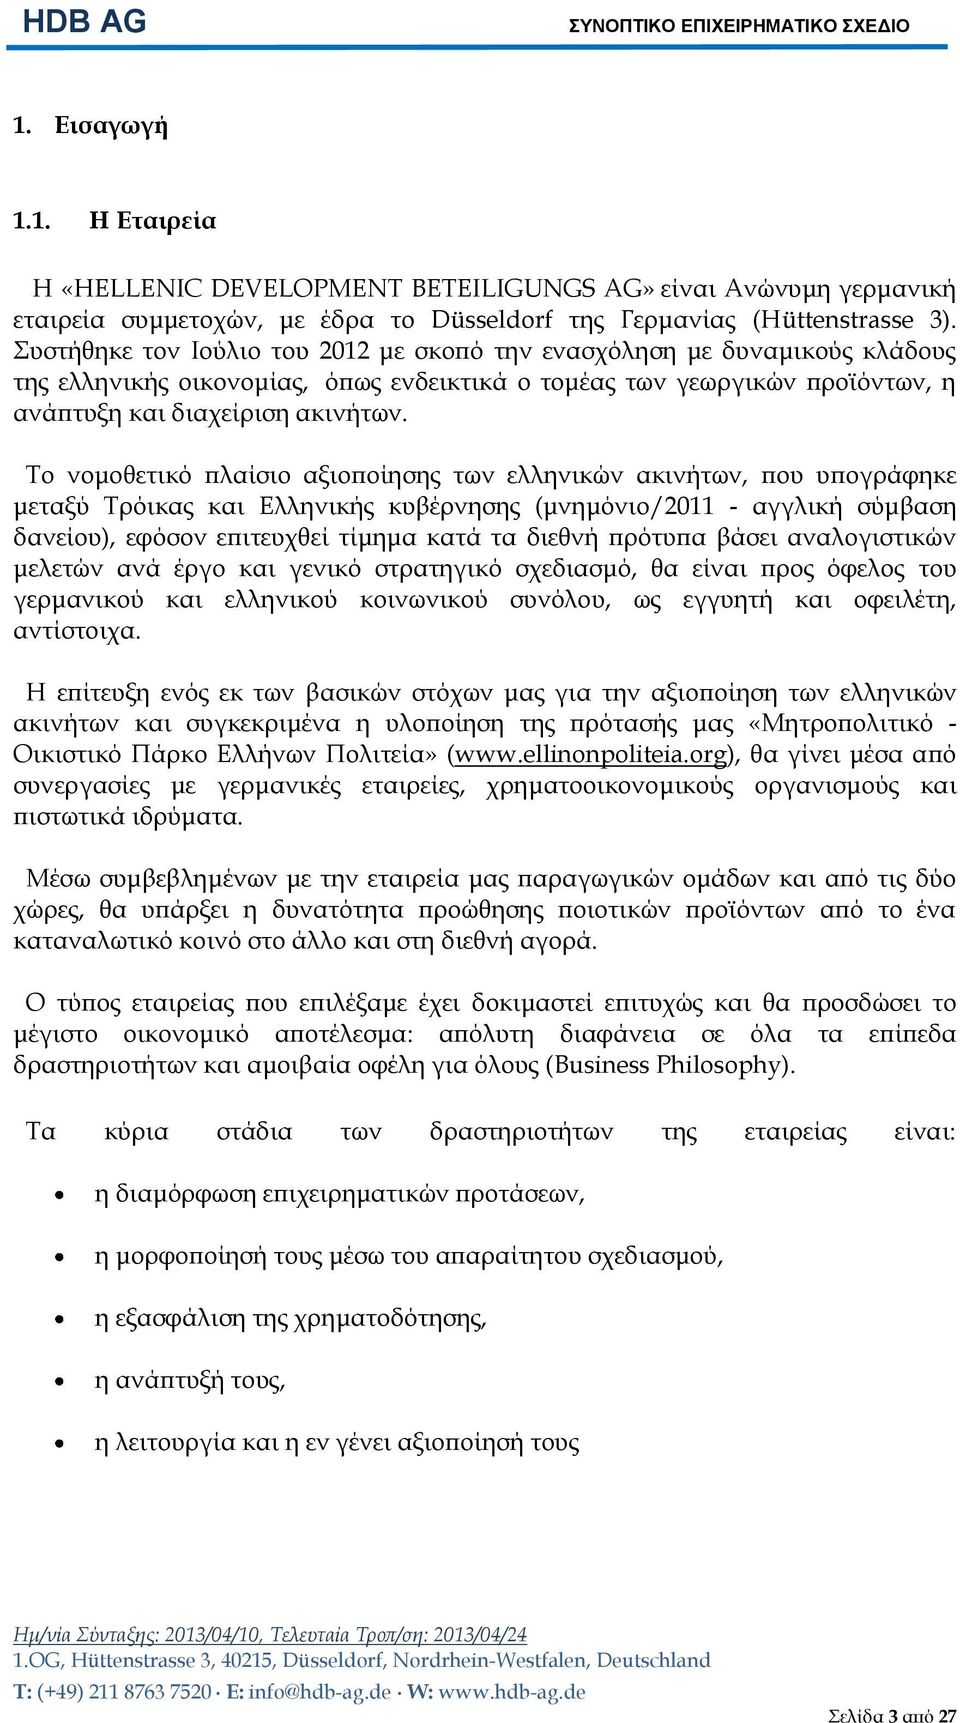 Το νομοθετικό πλαίσιο αξιοποίησης των ελληνικών ακινήτων, που υπογράφηκε μεταξύ Τρόικας και Ελληνικής κυβέρνησης (μνημόνιο/2011 - αγγλική σύμβαση δανείου), εφόσον επιτευχθεί τίμημα κατά τα διεθνή